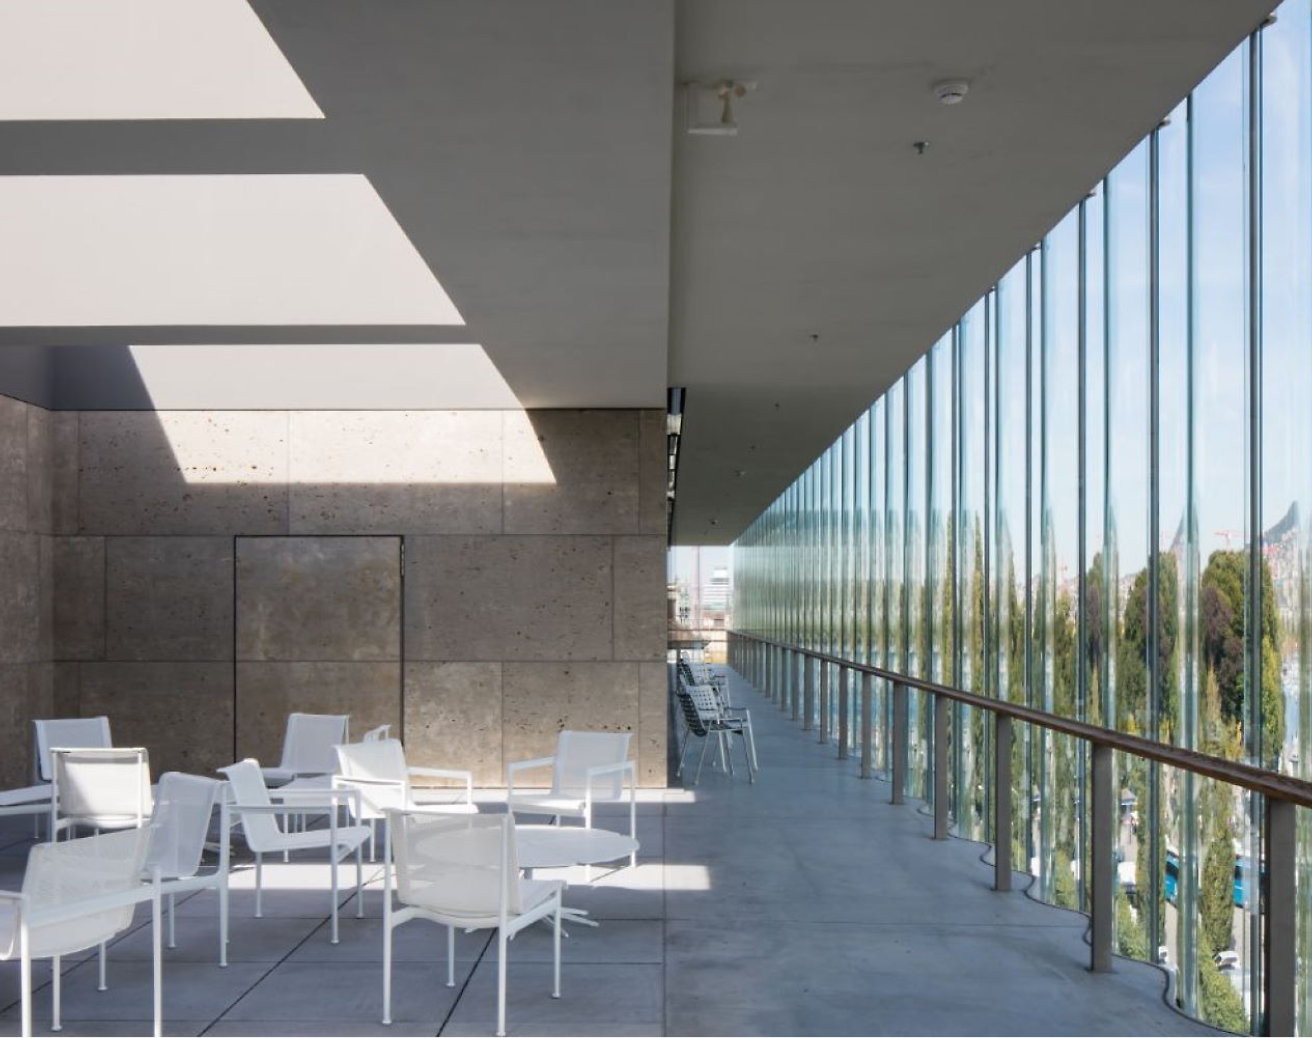 Moderne udendørs terrasse med hvide stole og borde, med store glasvinduer og geometriske skygger